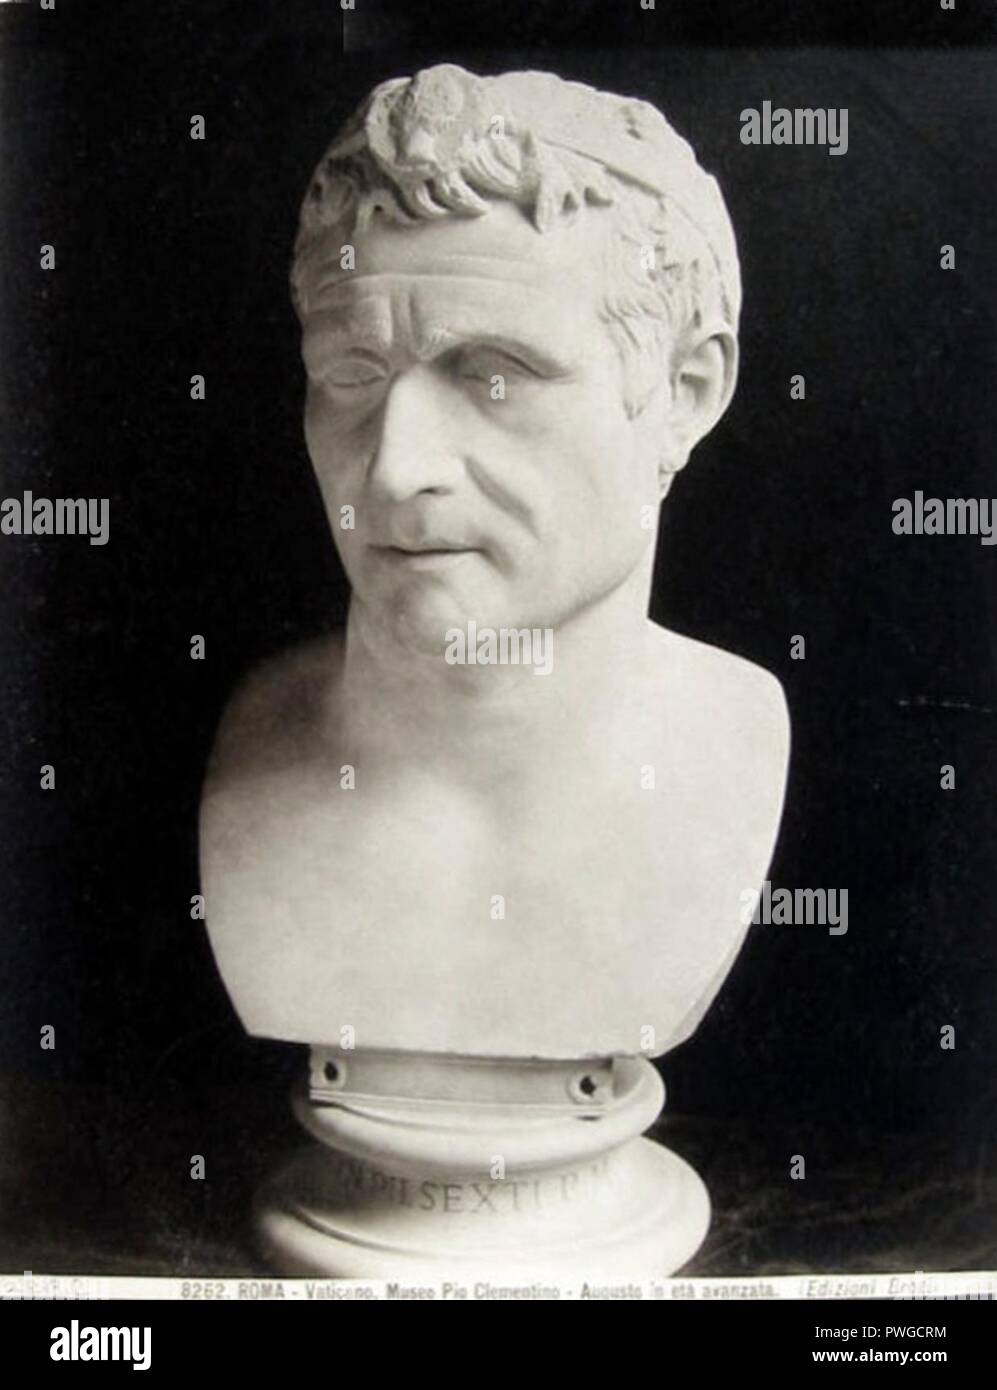 Brogi, Carlo (1850-1925) - n. 8262 - Roma - Vaticano - Museo Pio Clementino - Augusto in età avanzata. Stock Photo